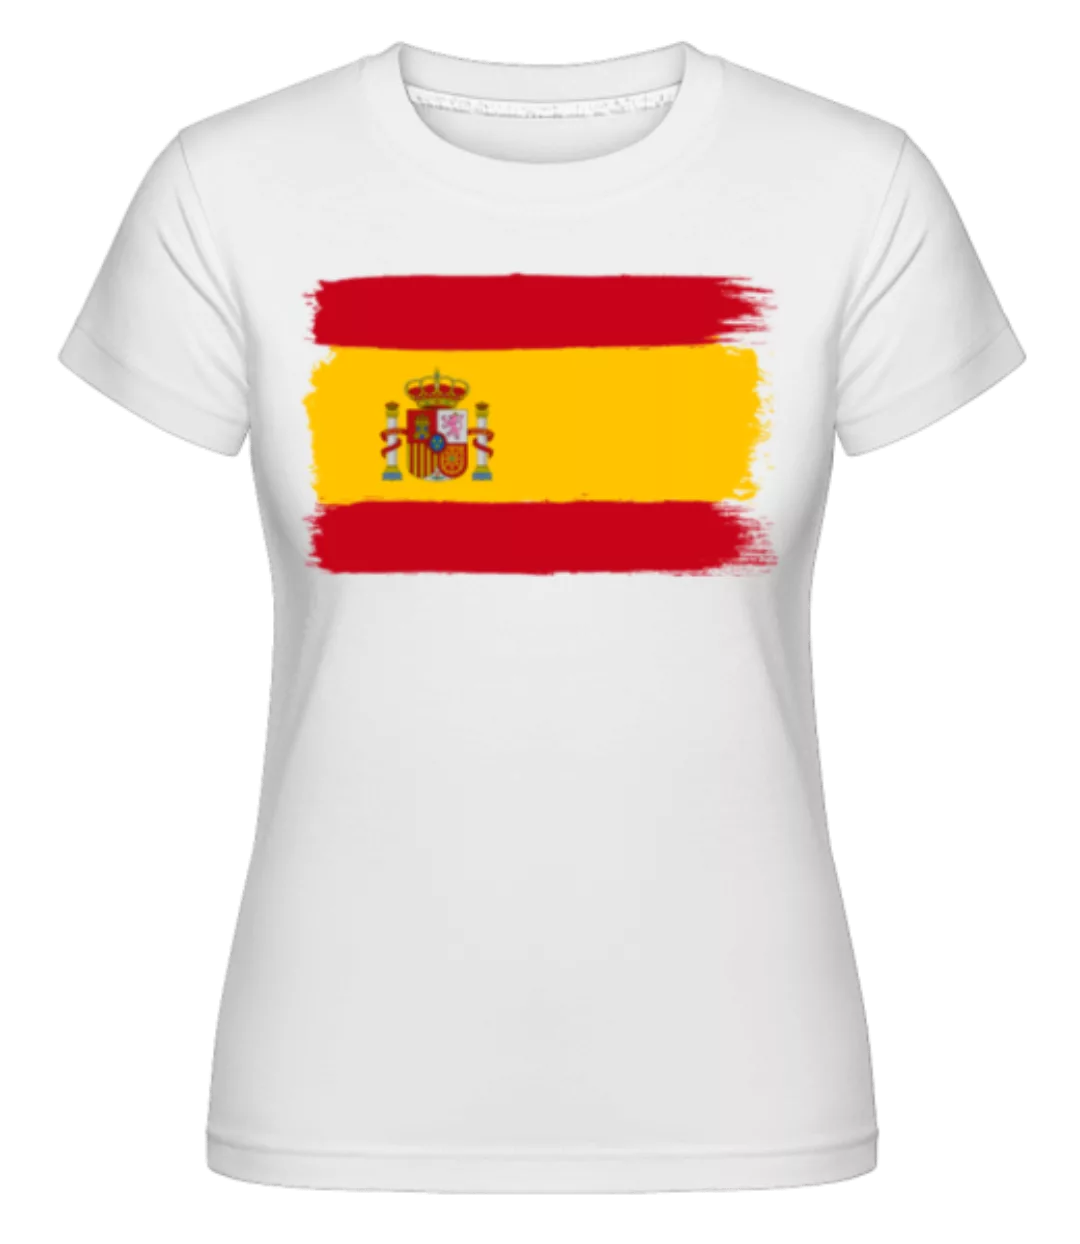 Länder Flagge Spanien · Shirtinator Frauen T-Shirt günstig online kaufen